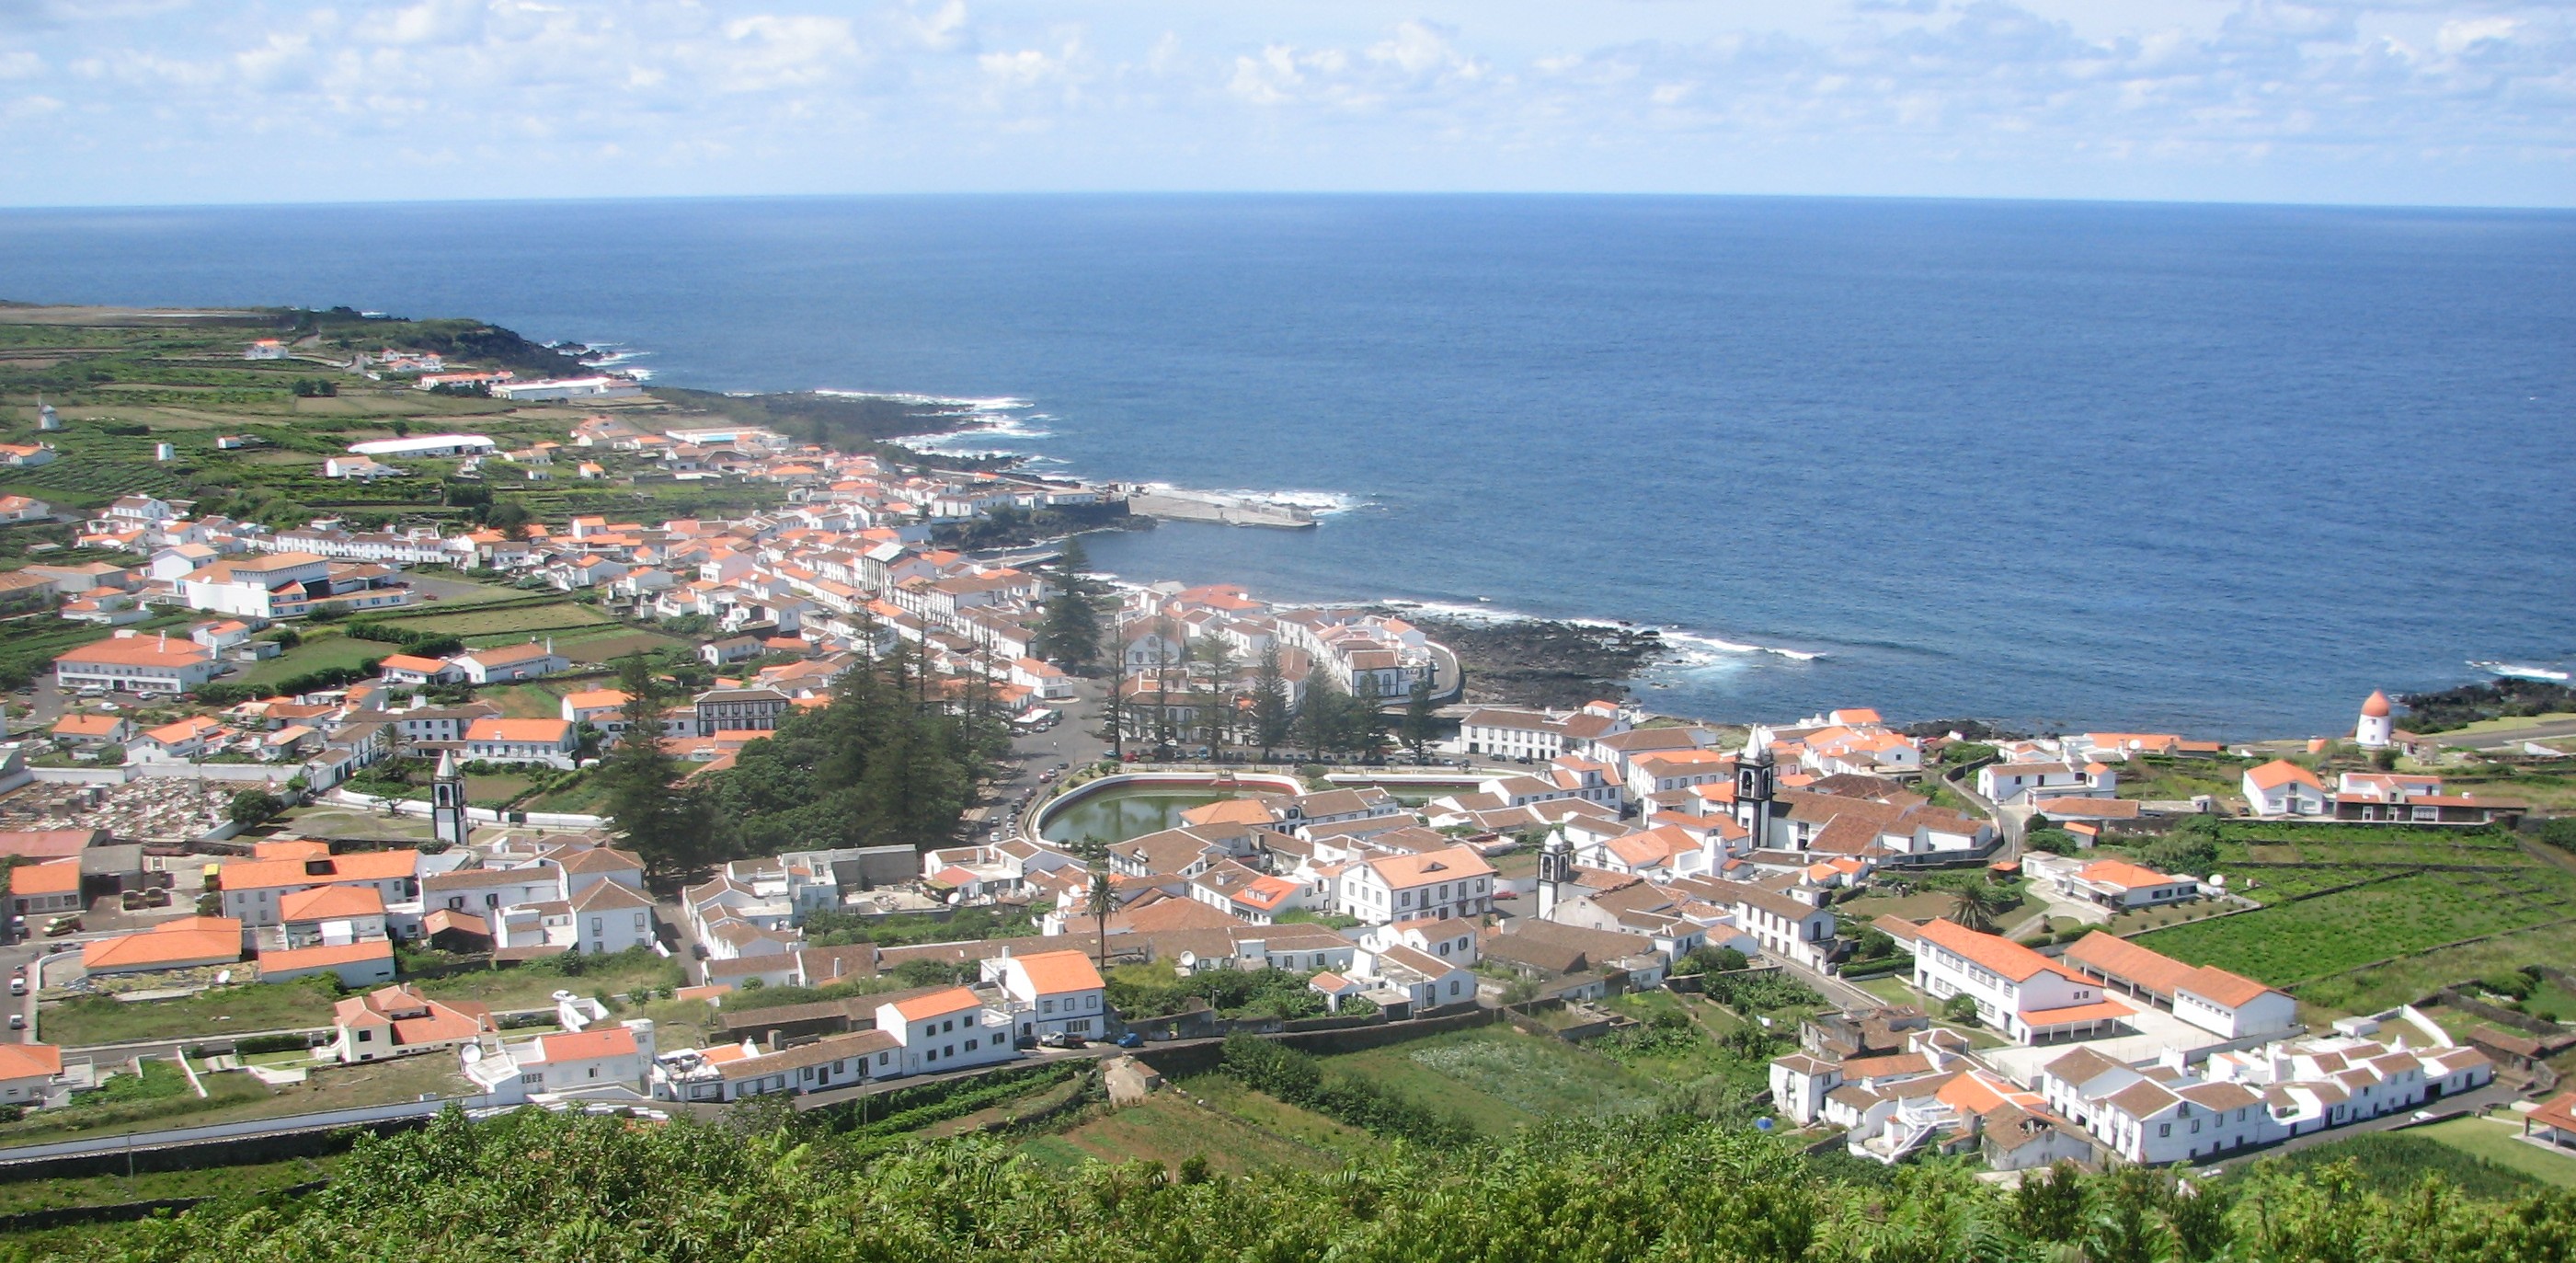 Governo dos Açores abre concurso público internacional para a construção do Matadouro da Graciosa